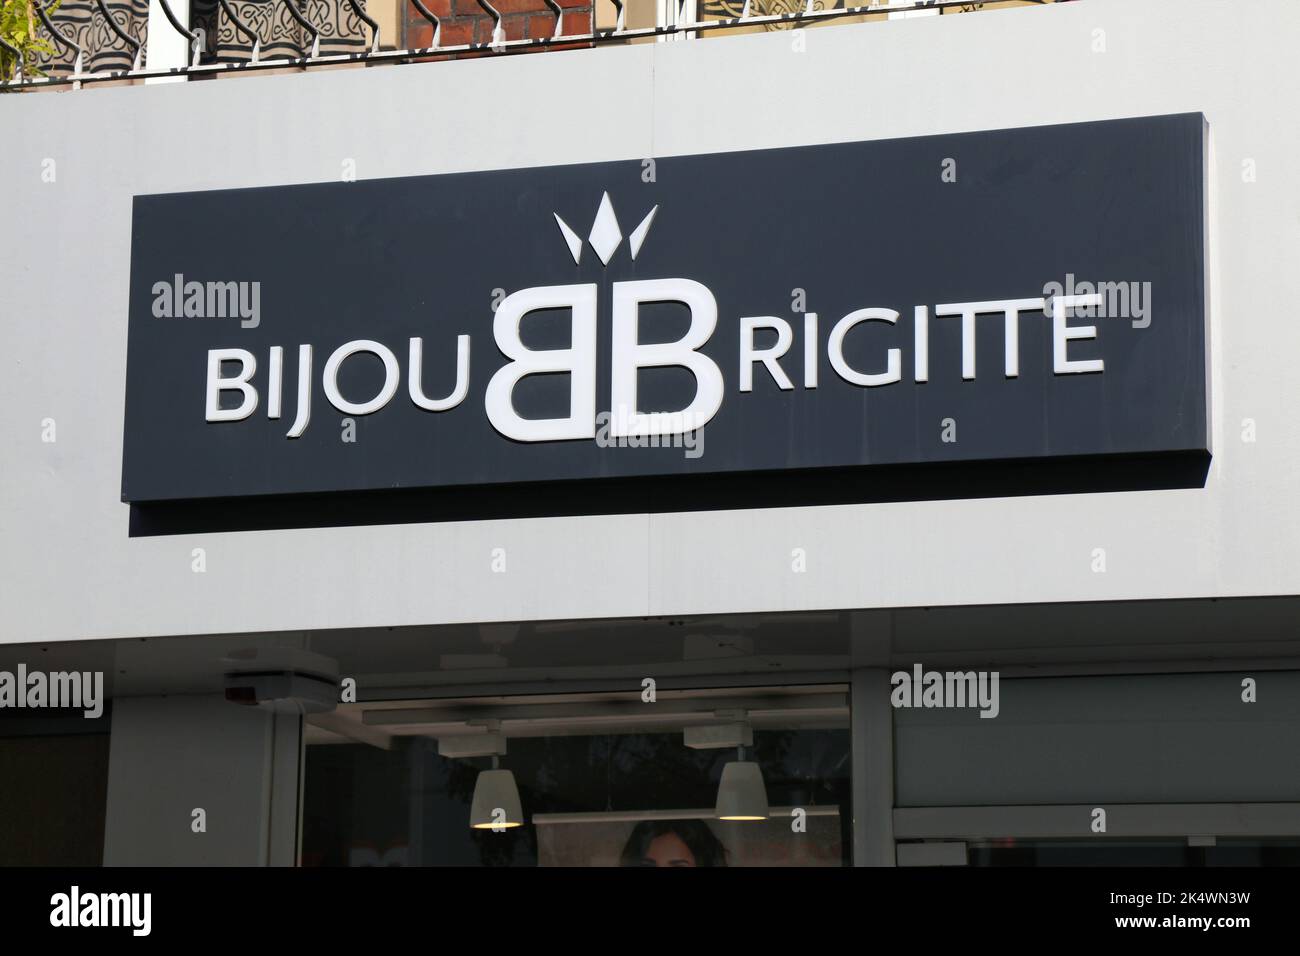 Bijou brigitte -Fotos und -Bildmaterial in hoher Auflösung – Alamy